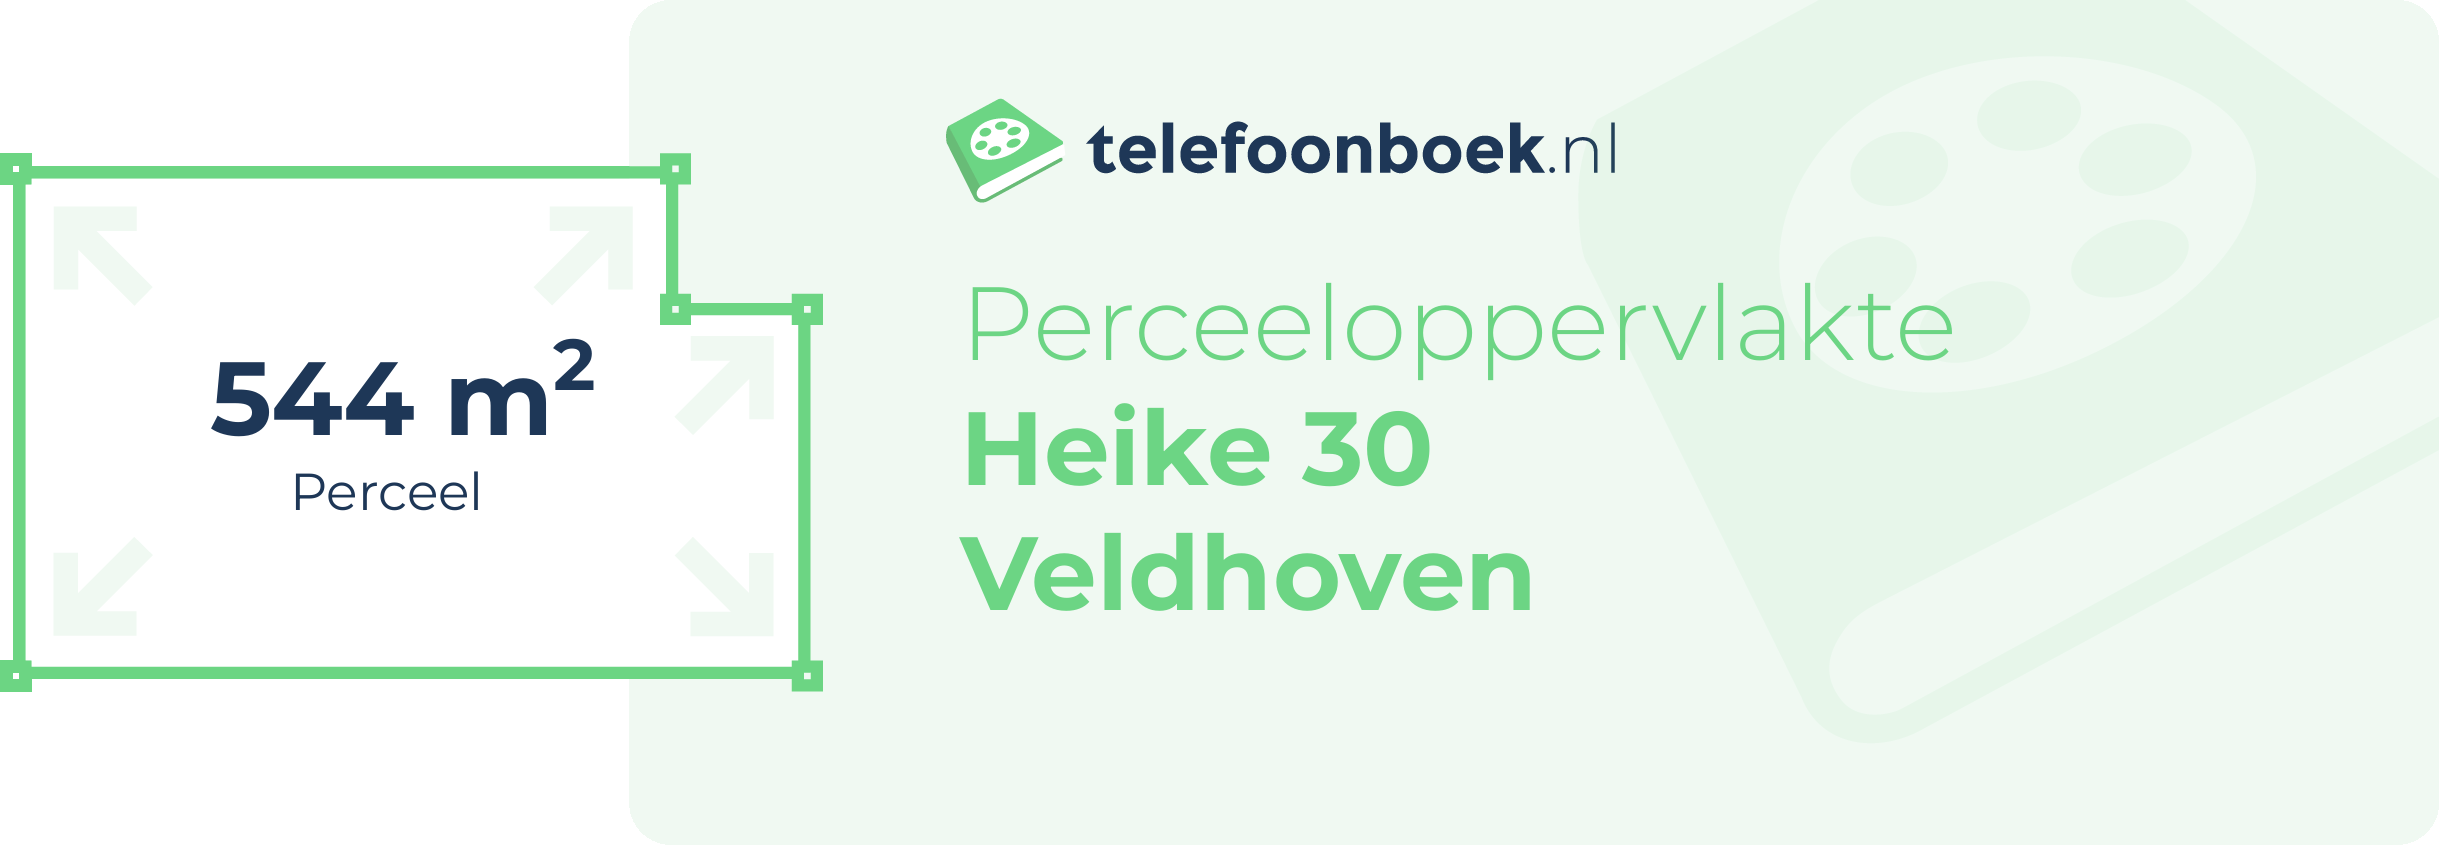 Perceeloppervlakte Heike 30 Veldhoven